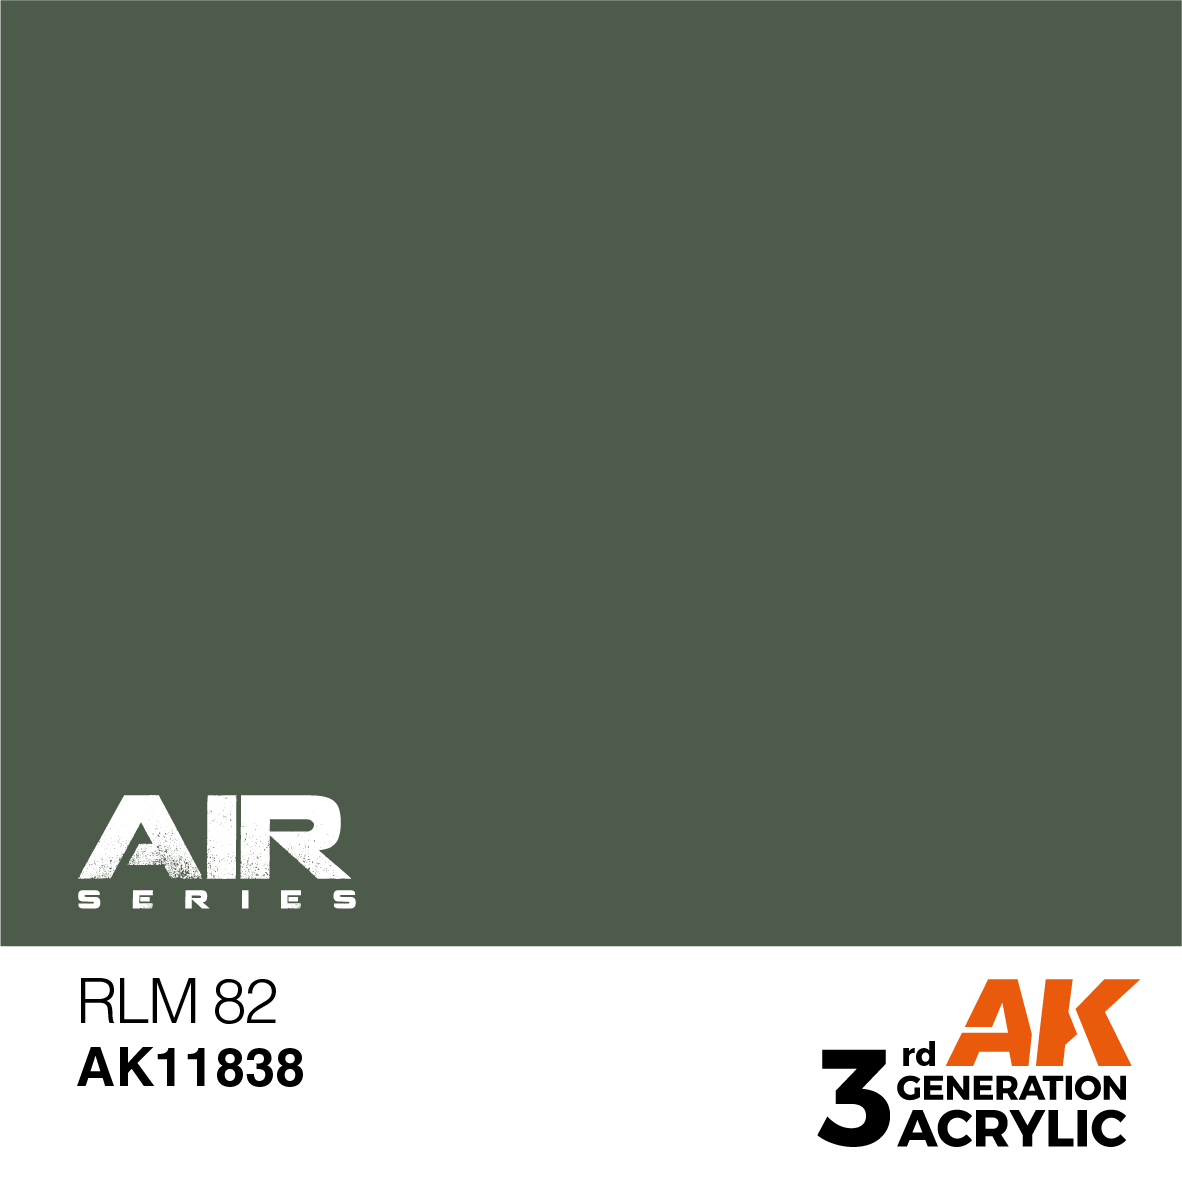 RLM 82 – AIR